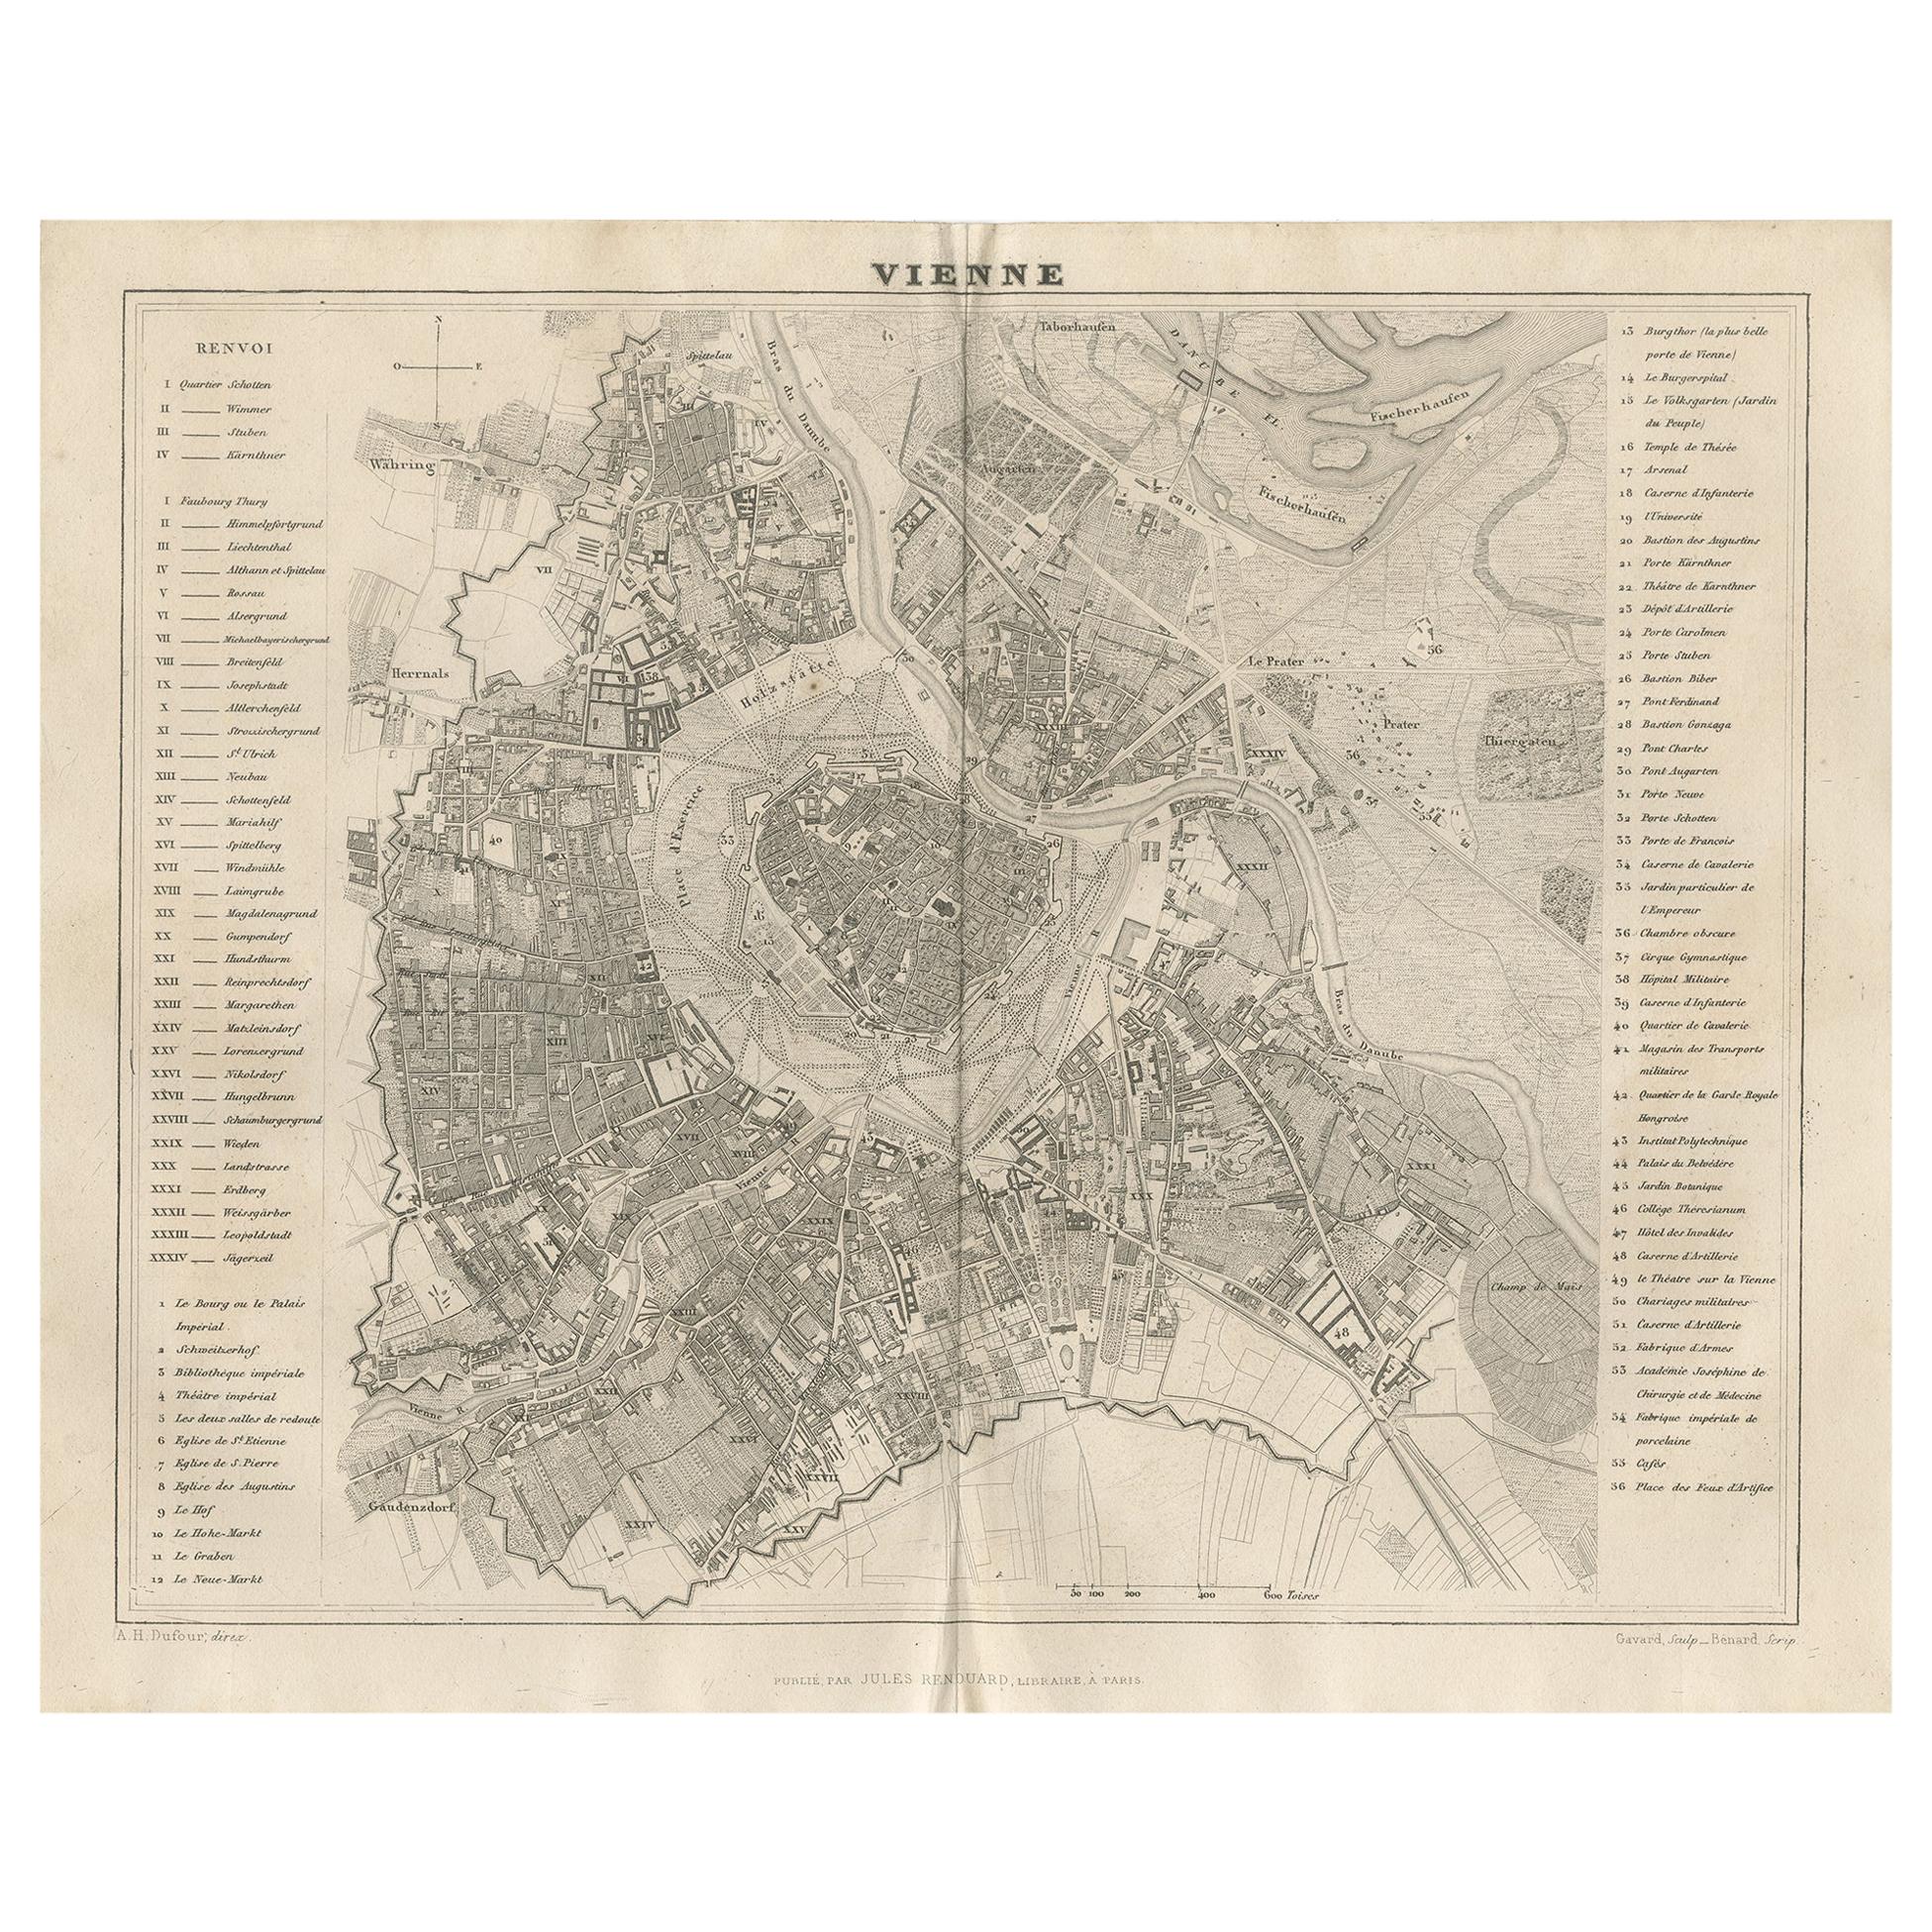 Carte ancienne de la ville de Vienne par Balbi '1847'